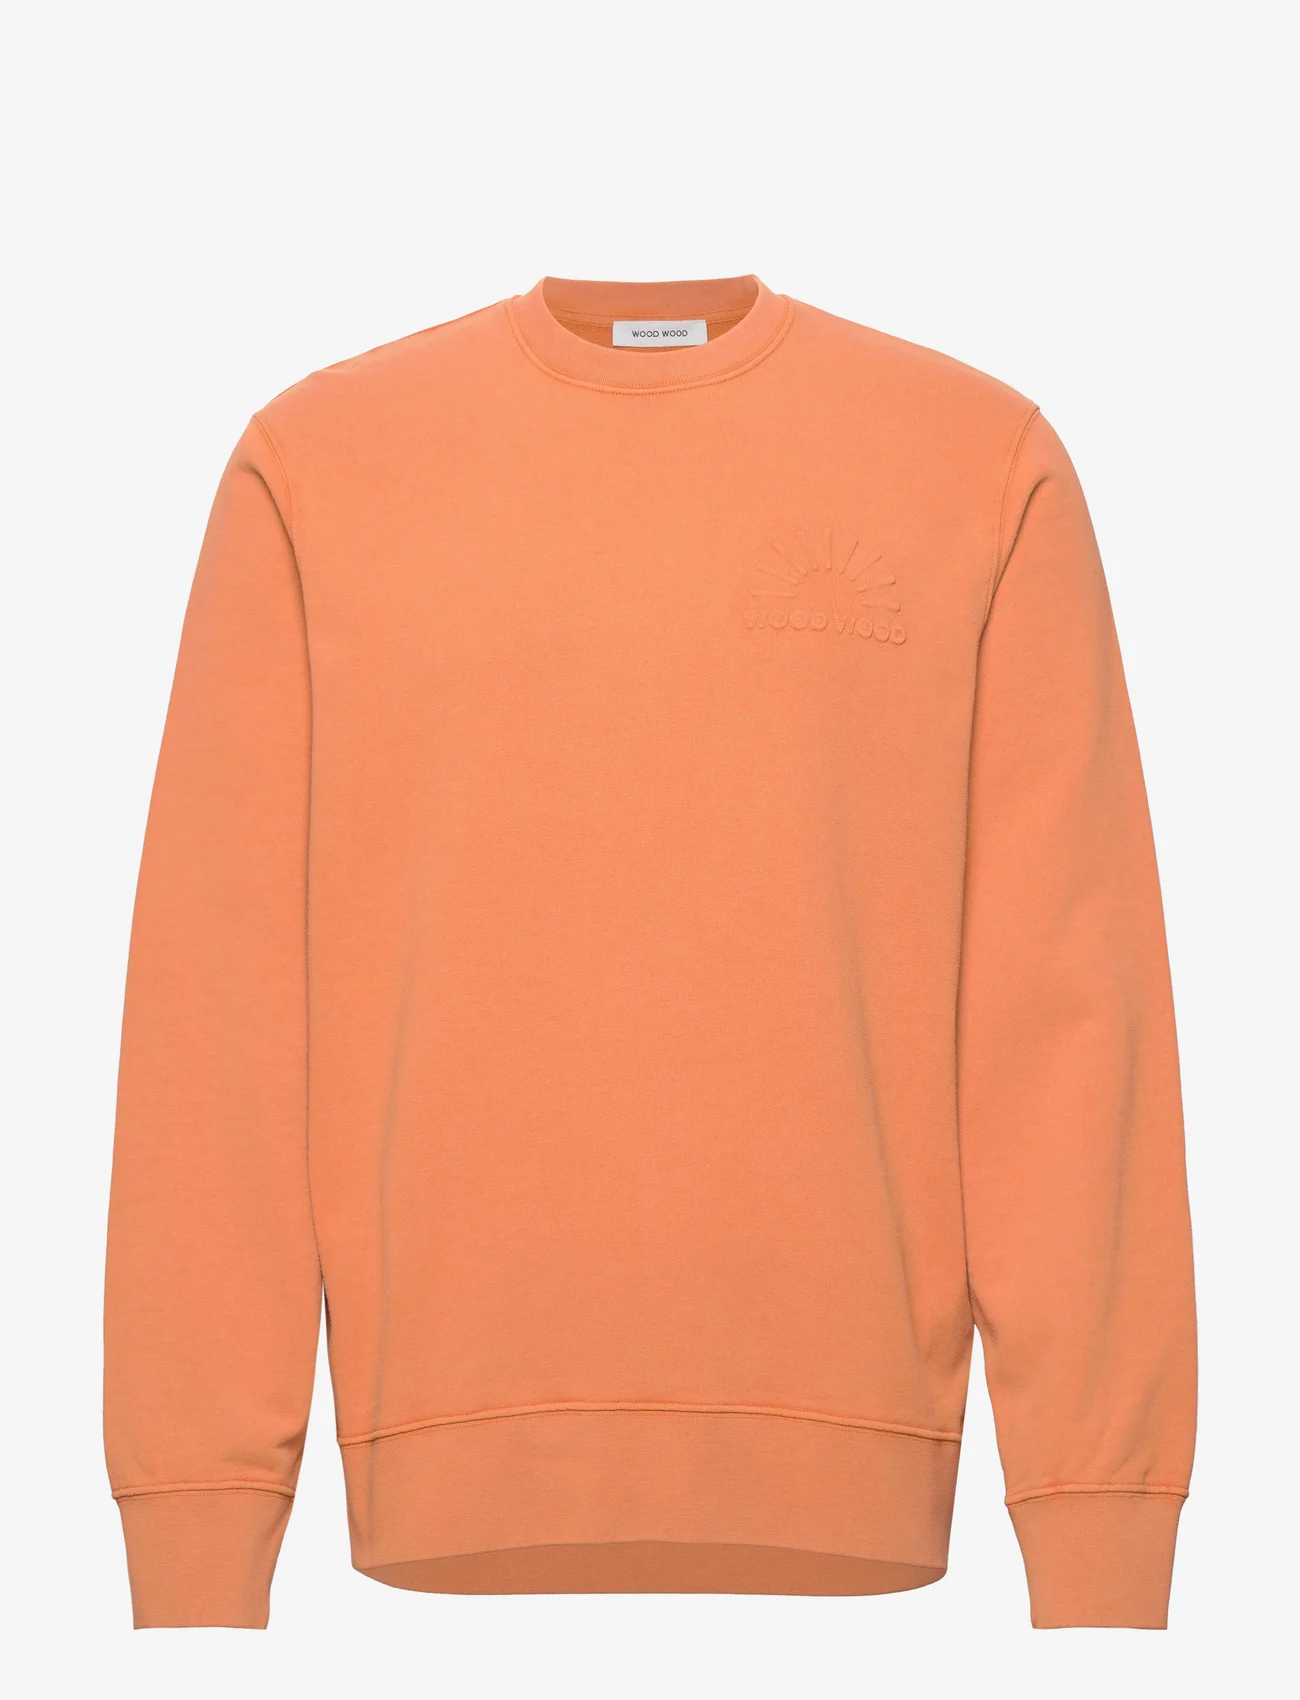 Wood Wood - Hugh embossed sweatshirt - hoodies - abricot orange - 0